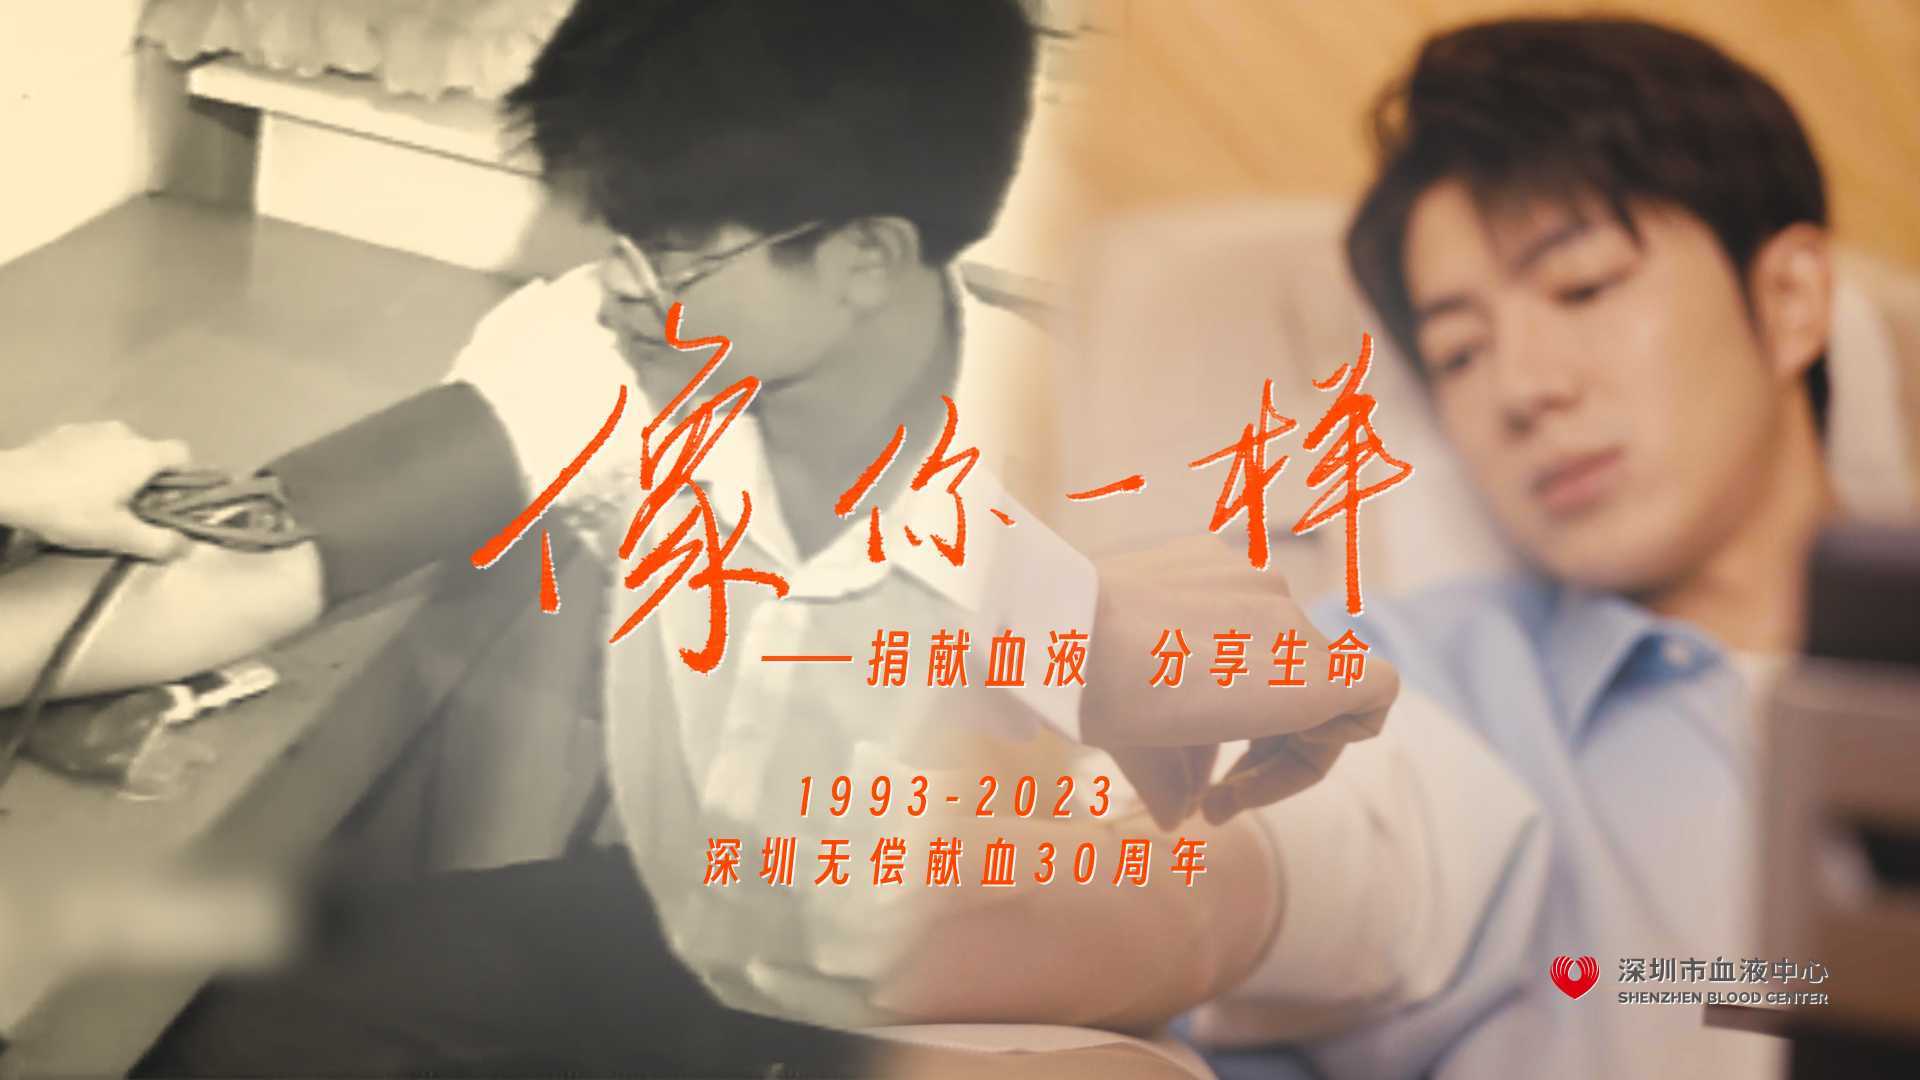 《像你一样》- 深圳市血液中心30周年MV